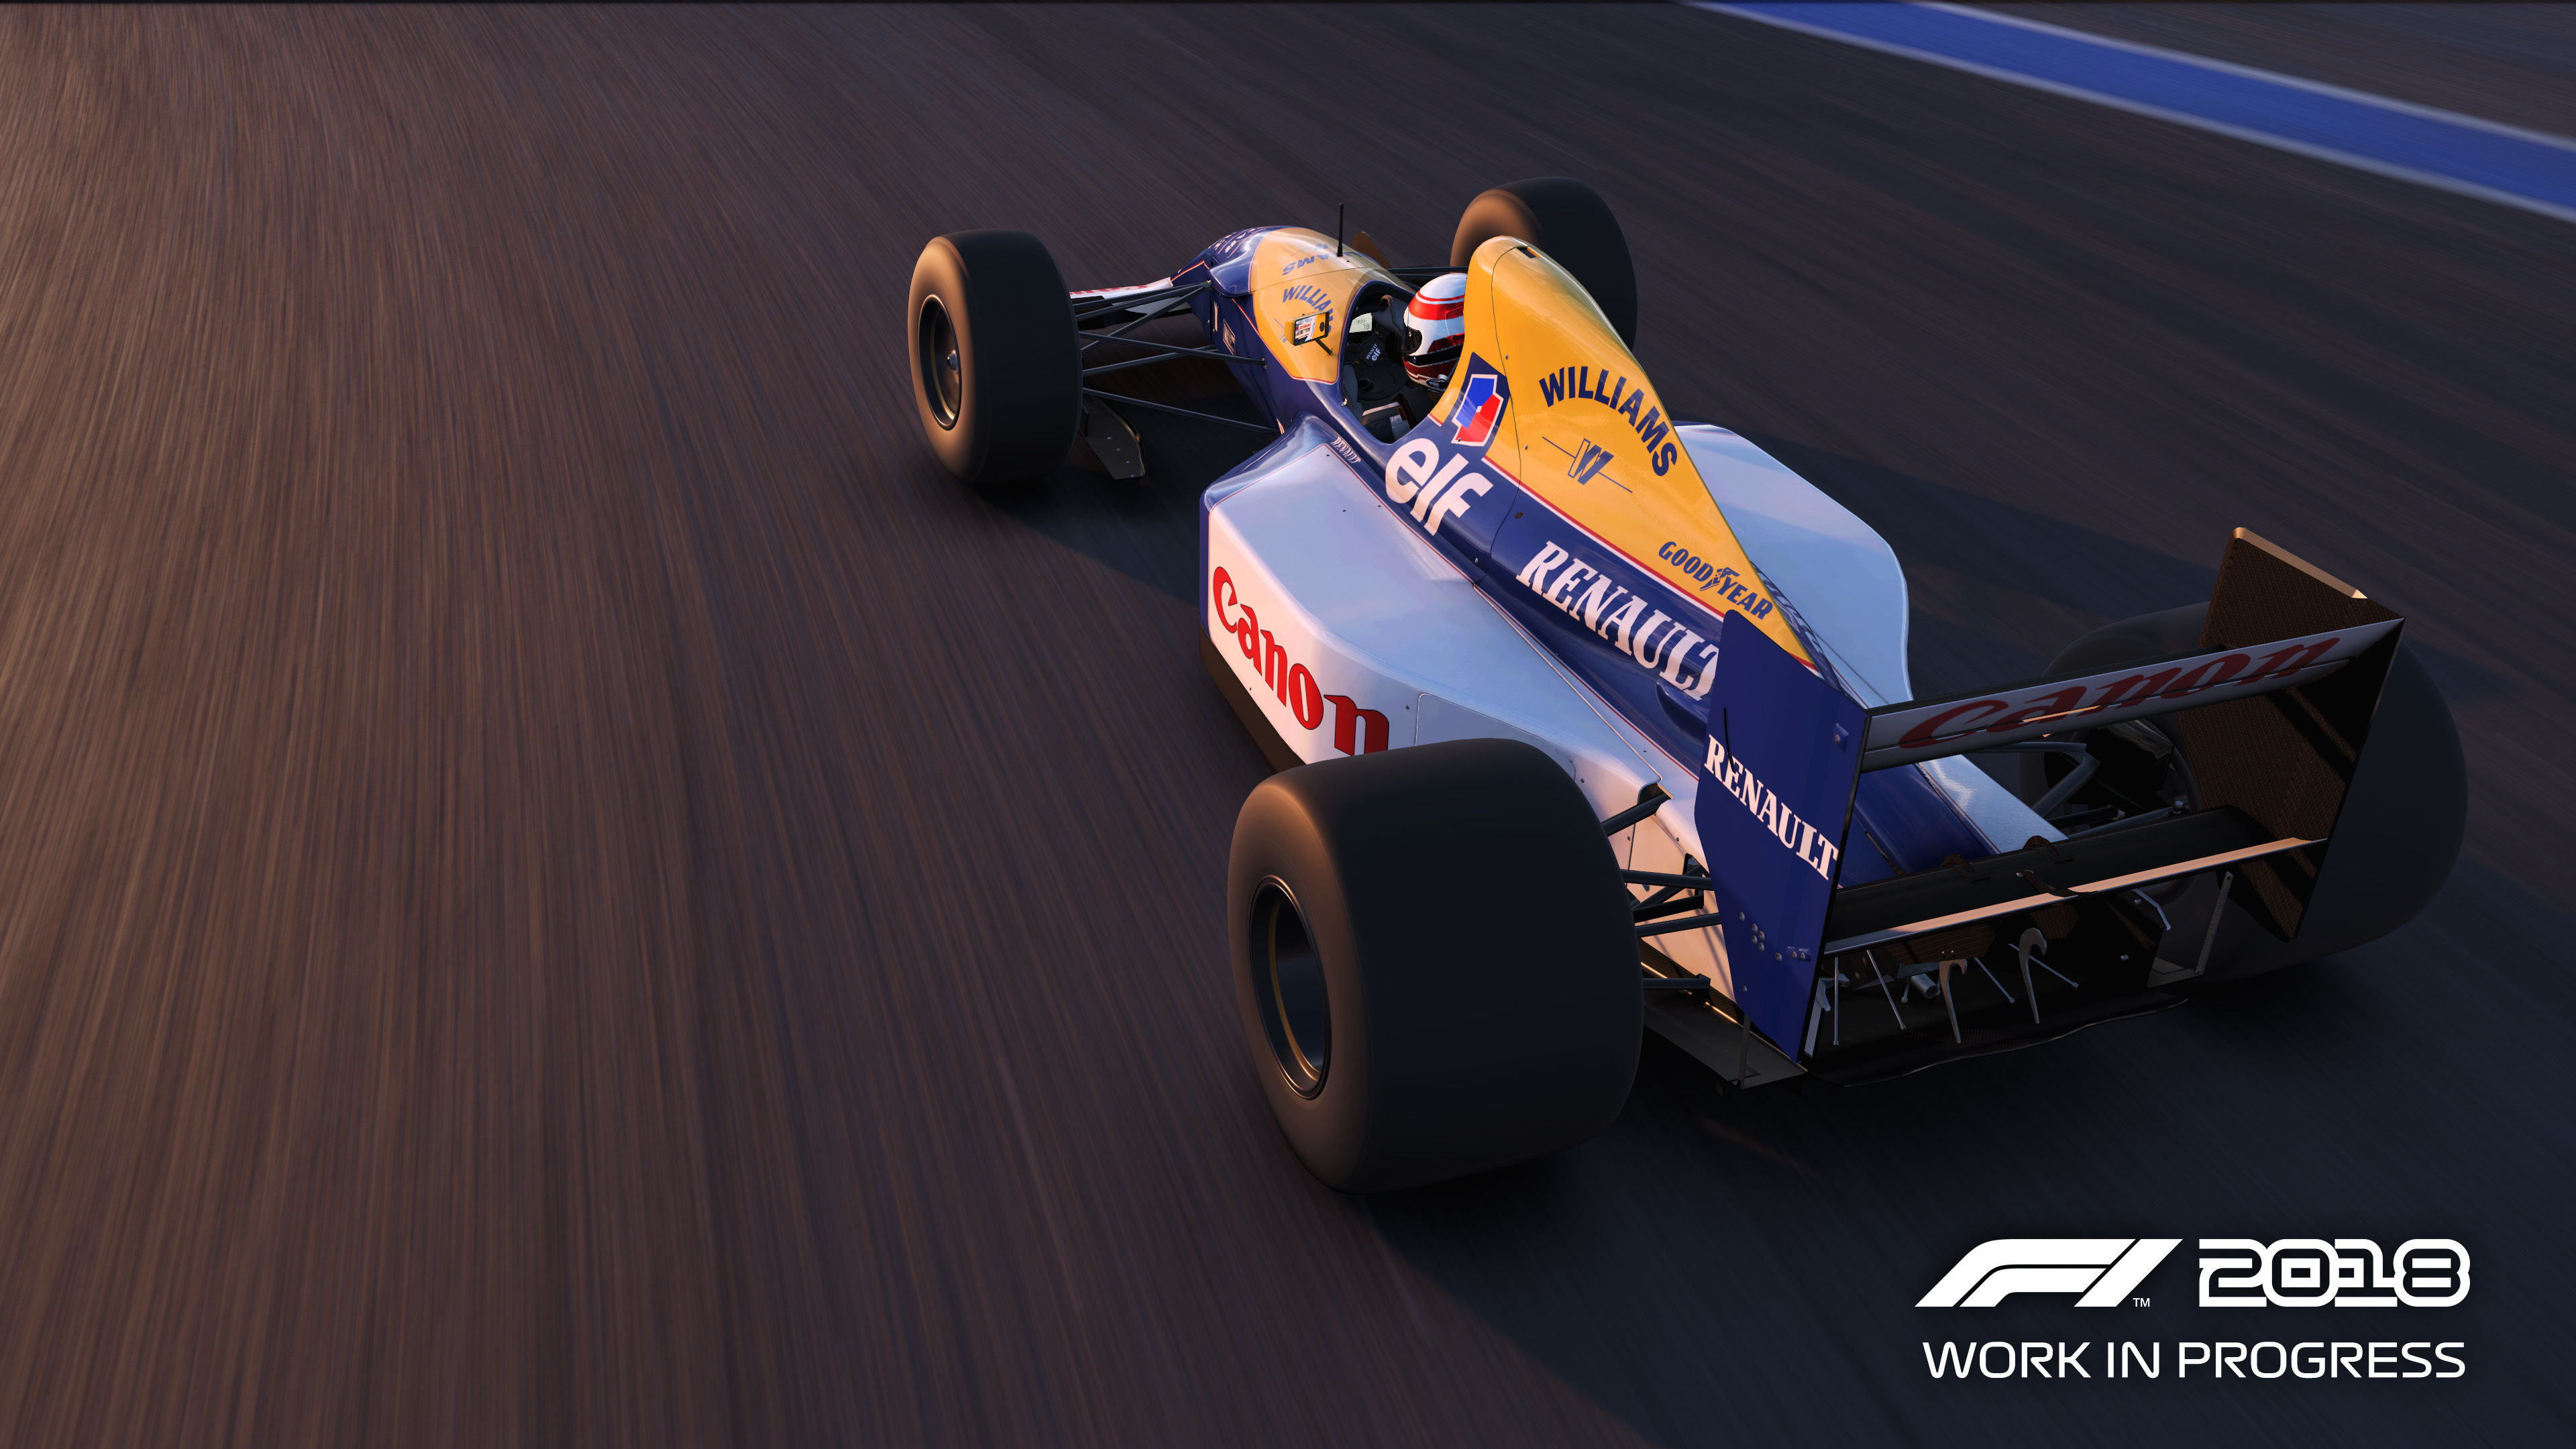 F1 2018'de araçlar nasıl görünüyor? Oyun içi görseller yayınlandı